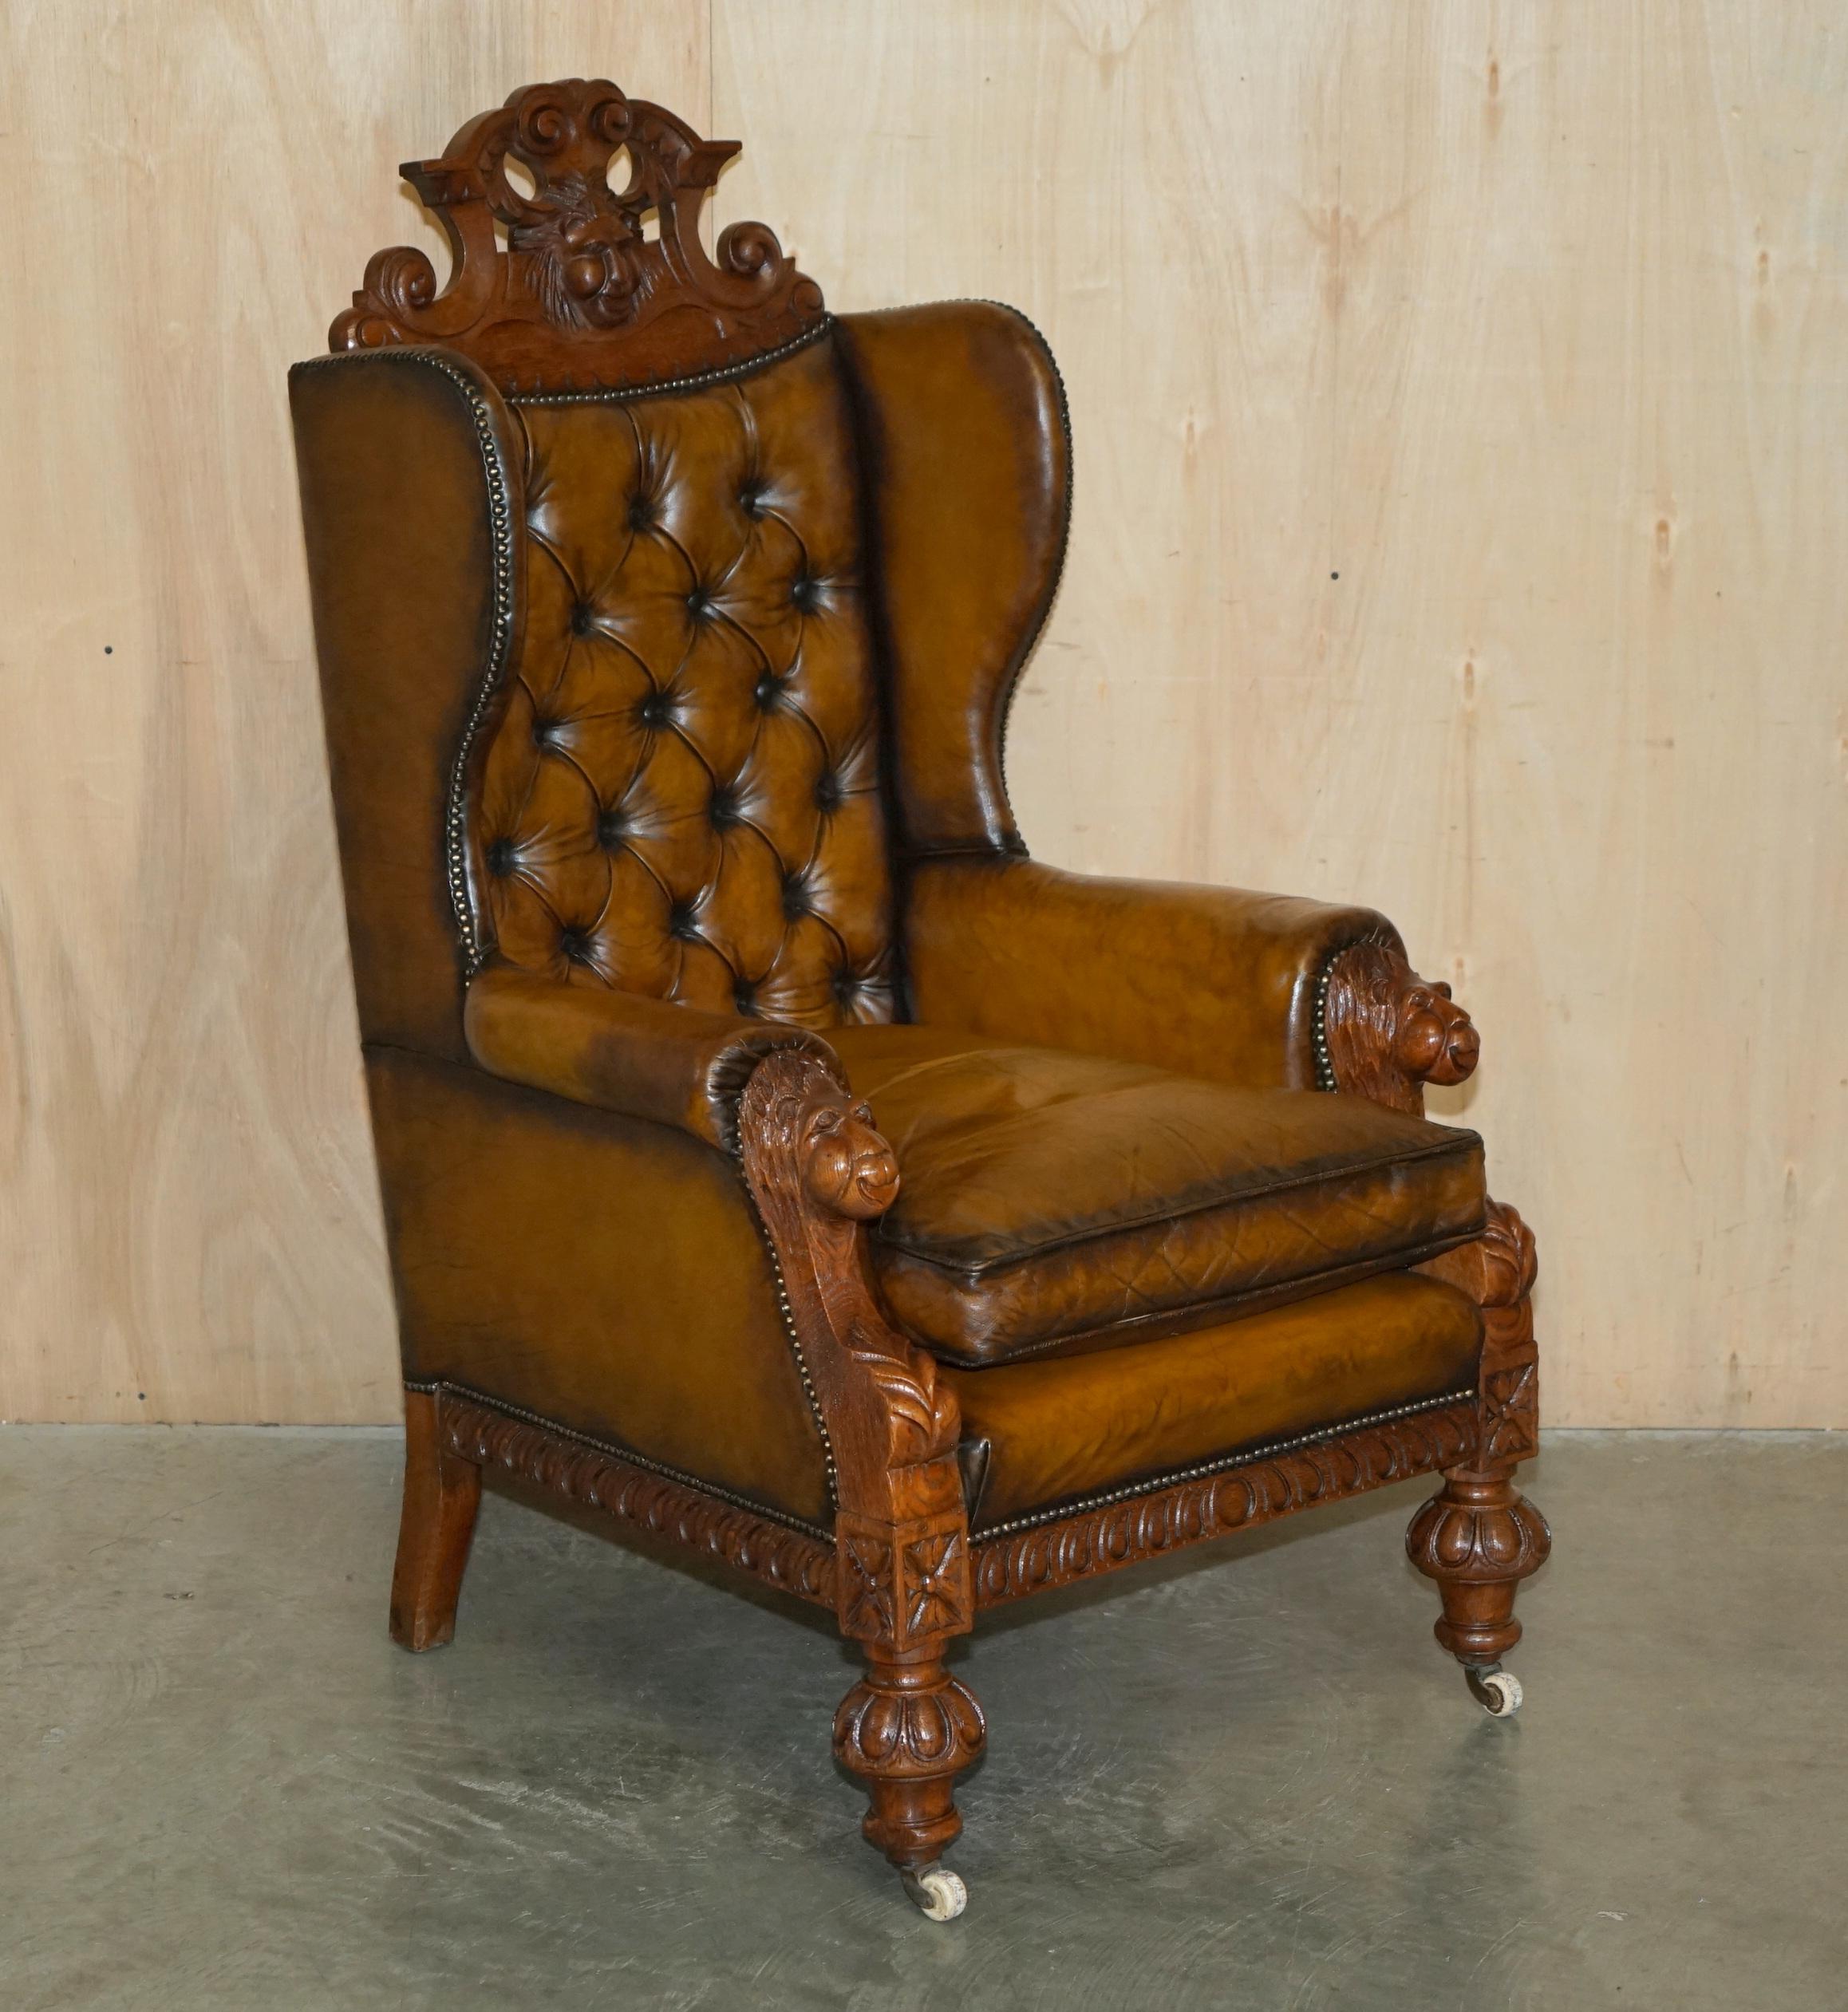 Royal House Antiques

The House Antiques a le plaisir de proposer à la vente cette superbe paire de fauteuils trône anciens surdimensionnés, sculptés à la main, représentant des têtes de lion pour les accoudoirs et au-dessus de l'appui-tête, avec